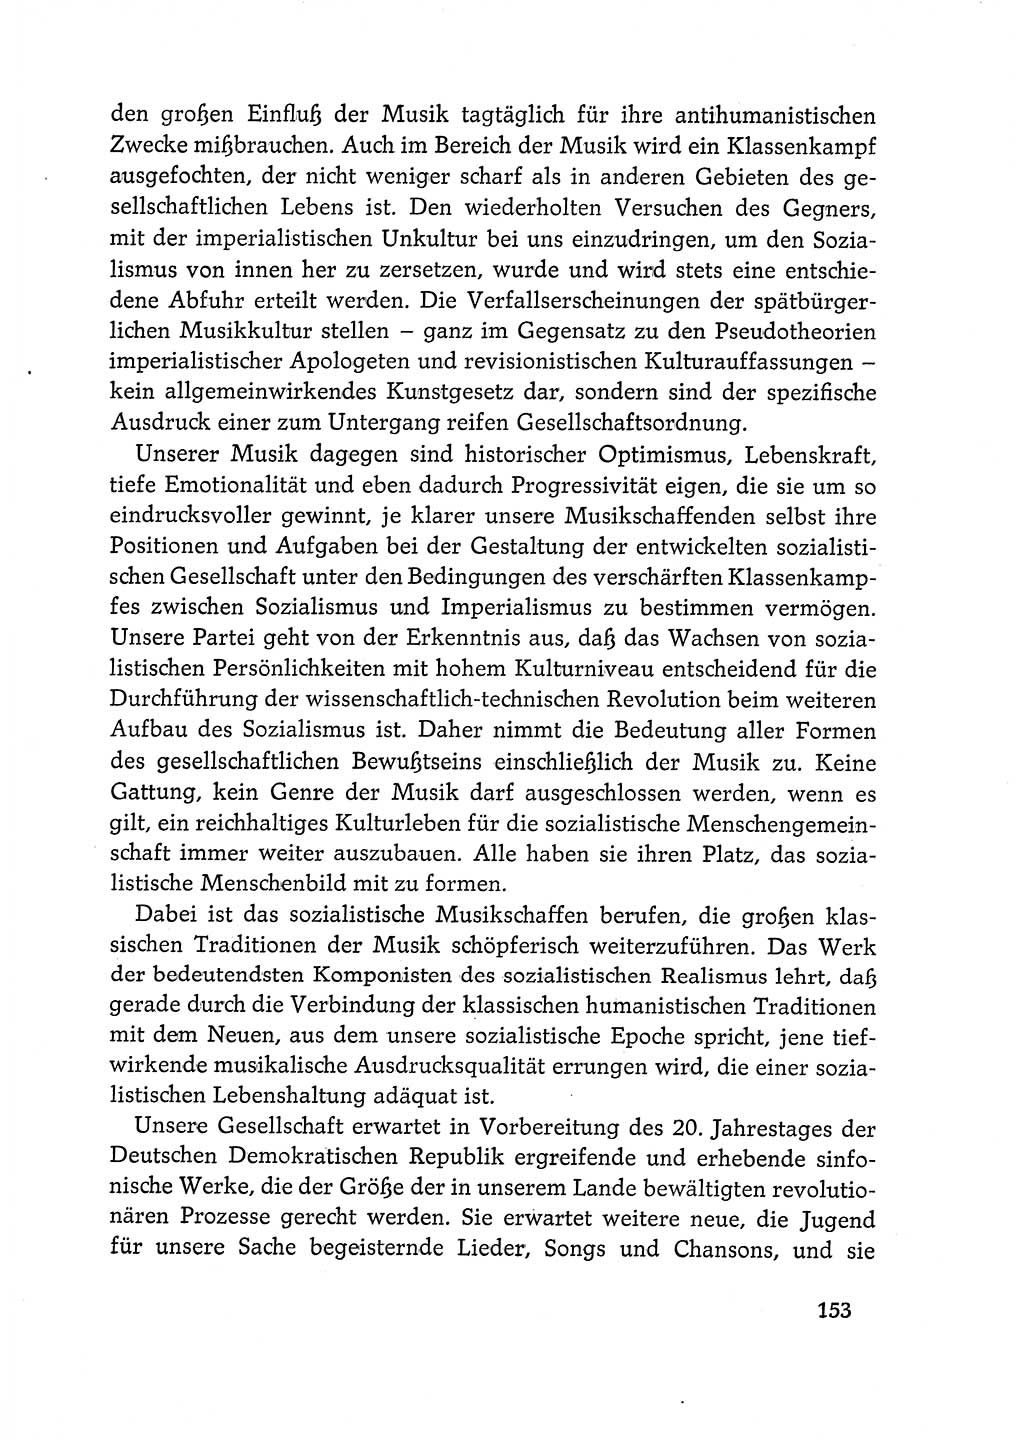 Dokumente der Sozialistischen Einheitspartei Deutschlands (SED) [Deutsche Demokratische Republik (DDR)] 1968-1969, Seite 153 (Dok. SED DDR 1968-1969, S. 153)